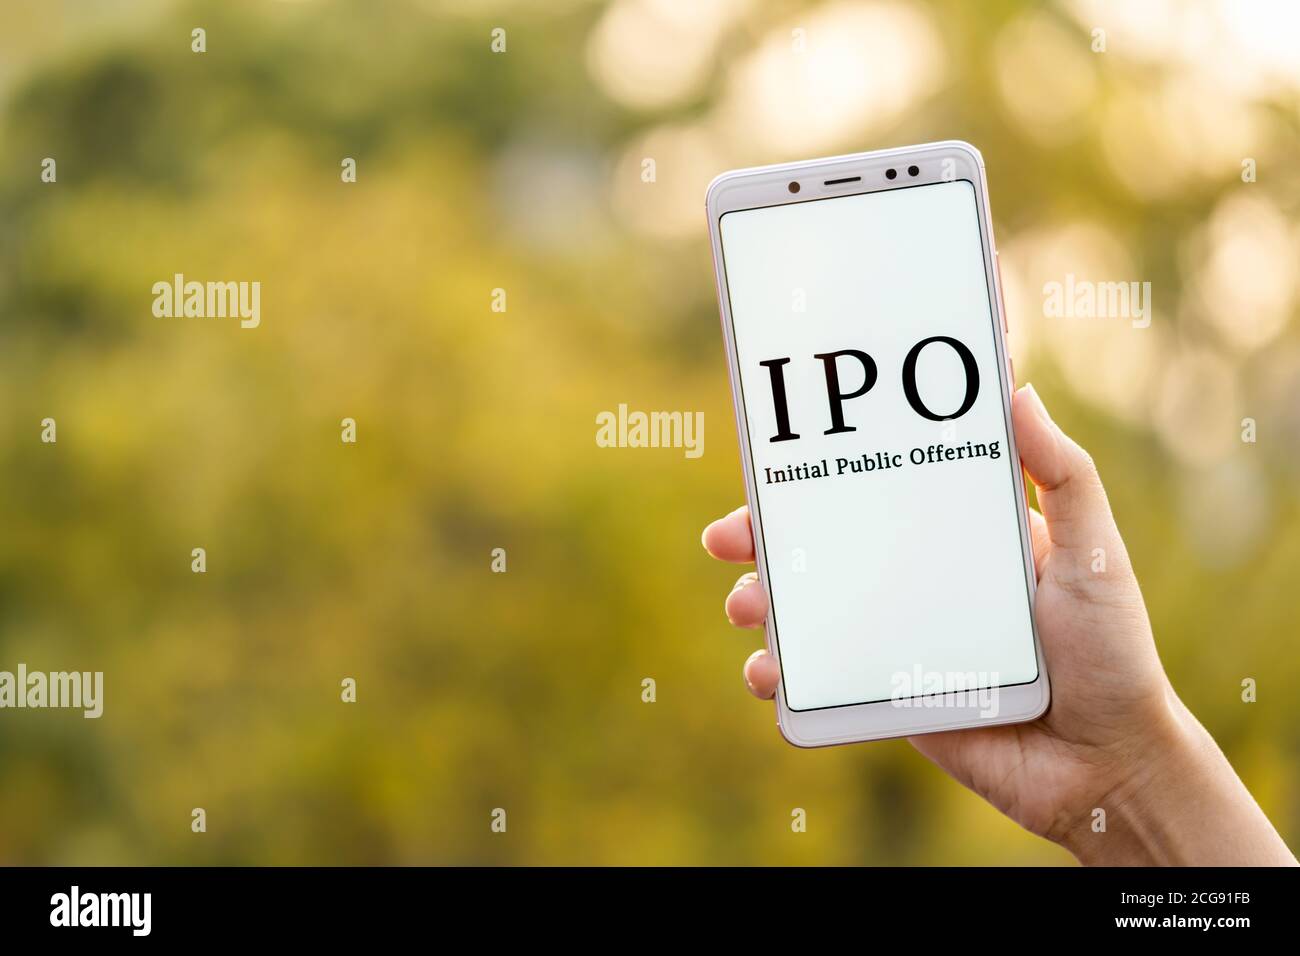 Concepto inicial de oferta pública. Joven mujer mano sosteniendo el teléfono móvil y mostrando IPO que se muestra en su pantalla en el fondo al aire libre con cop Foto de stock